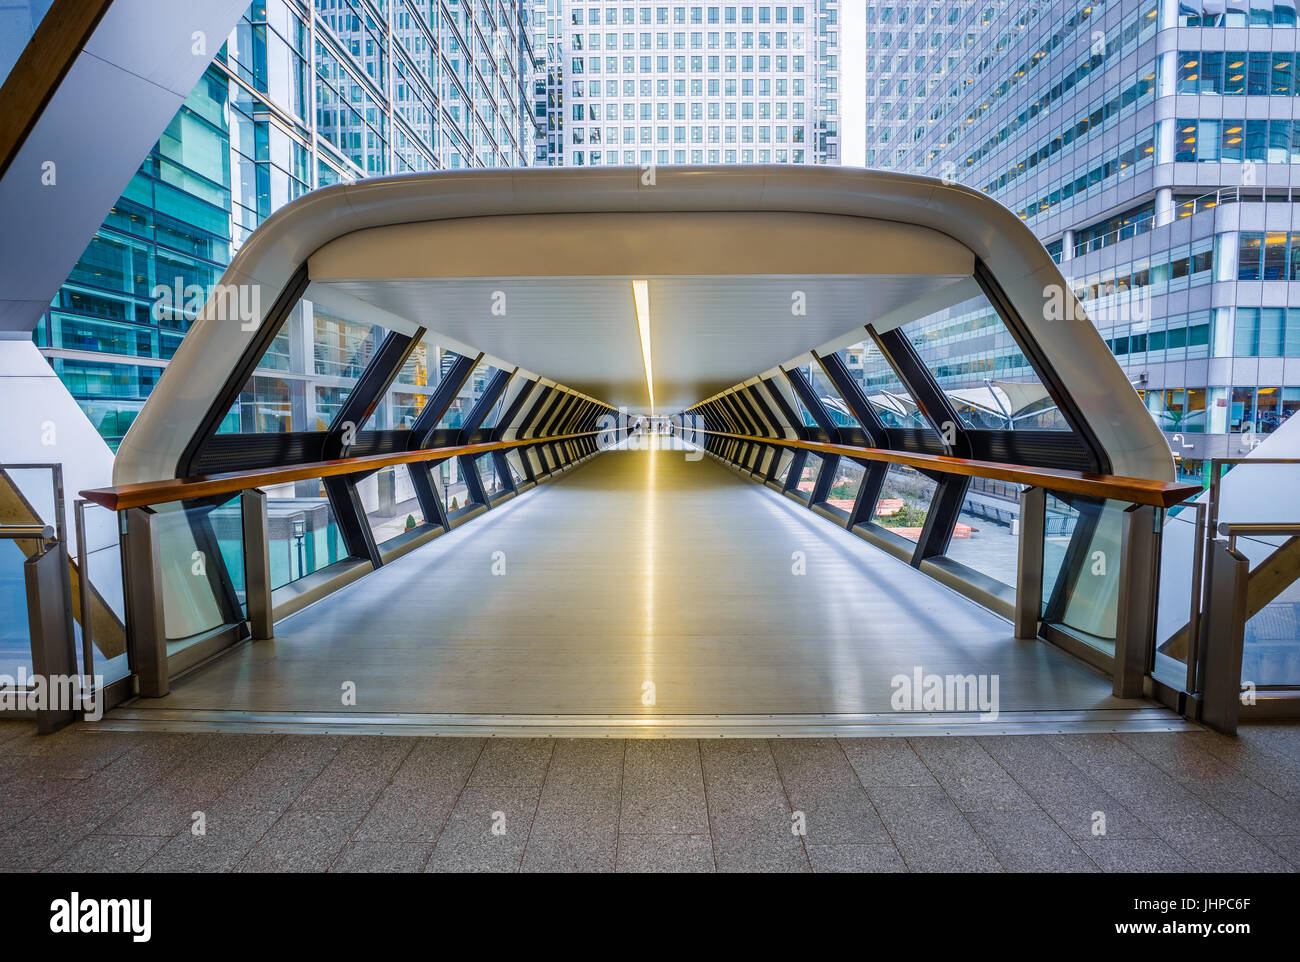 Londra, Inghilterra - pedonale pubblica cross rail passerella al quartiere finanziario di Canary Wharf con grattacieli Foto Stock